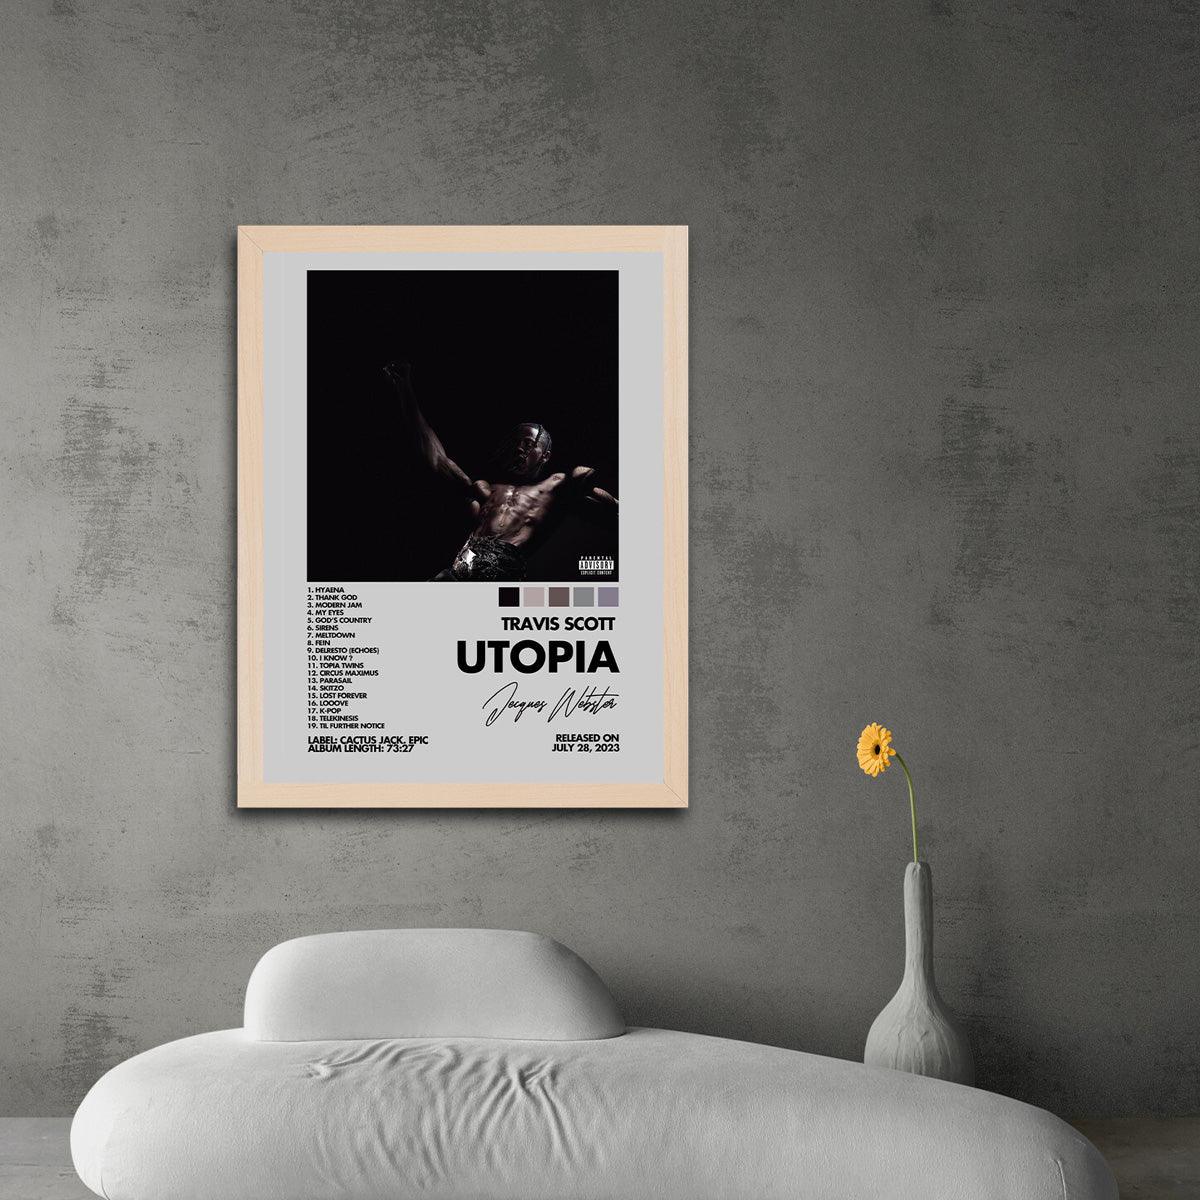 Utopia - Travis Scott.